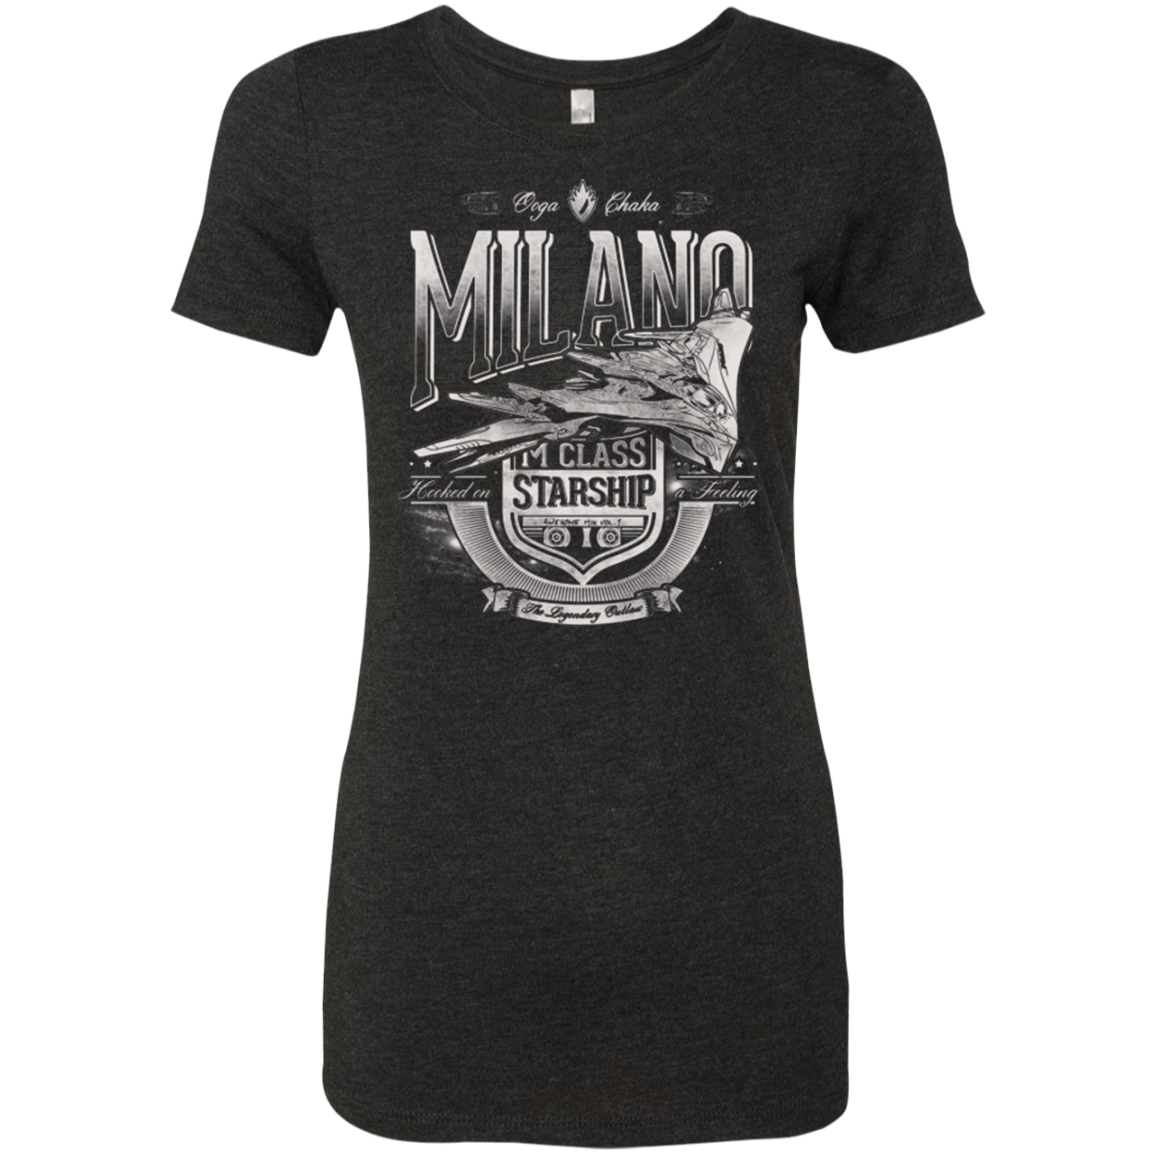 T-Shirts Vintage Black / Small Ooga Chaka Women's Triblend T-Shirt